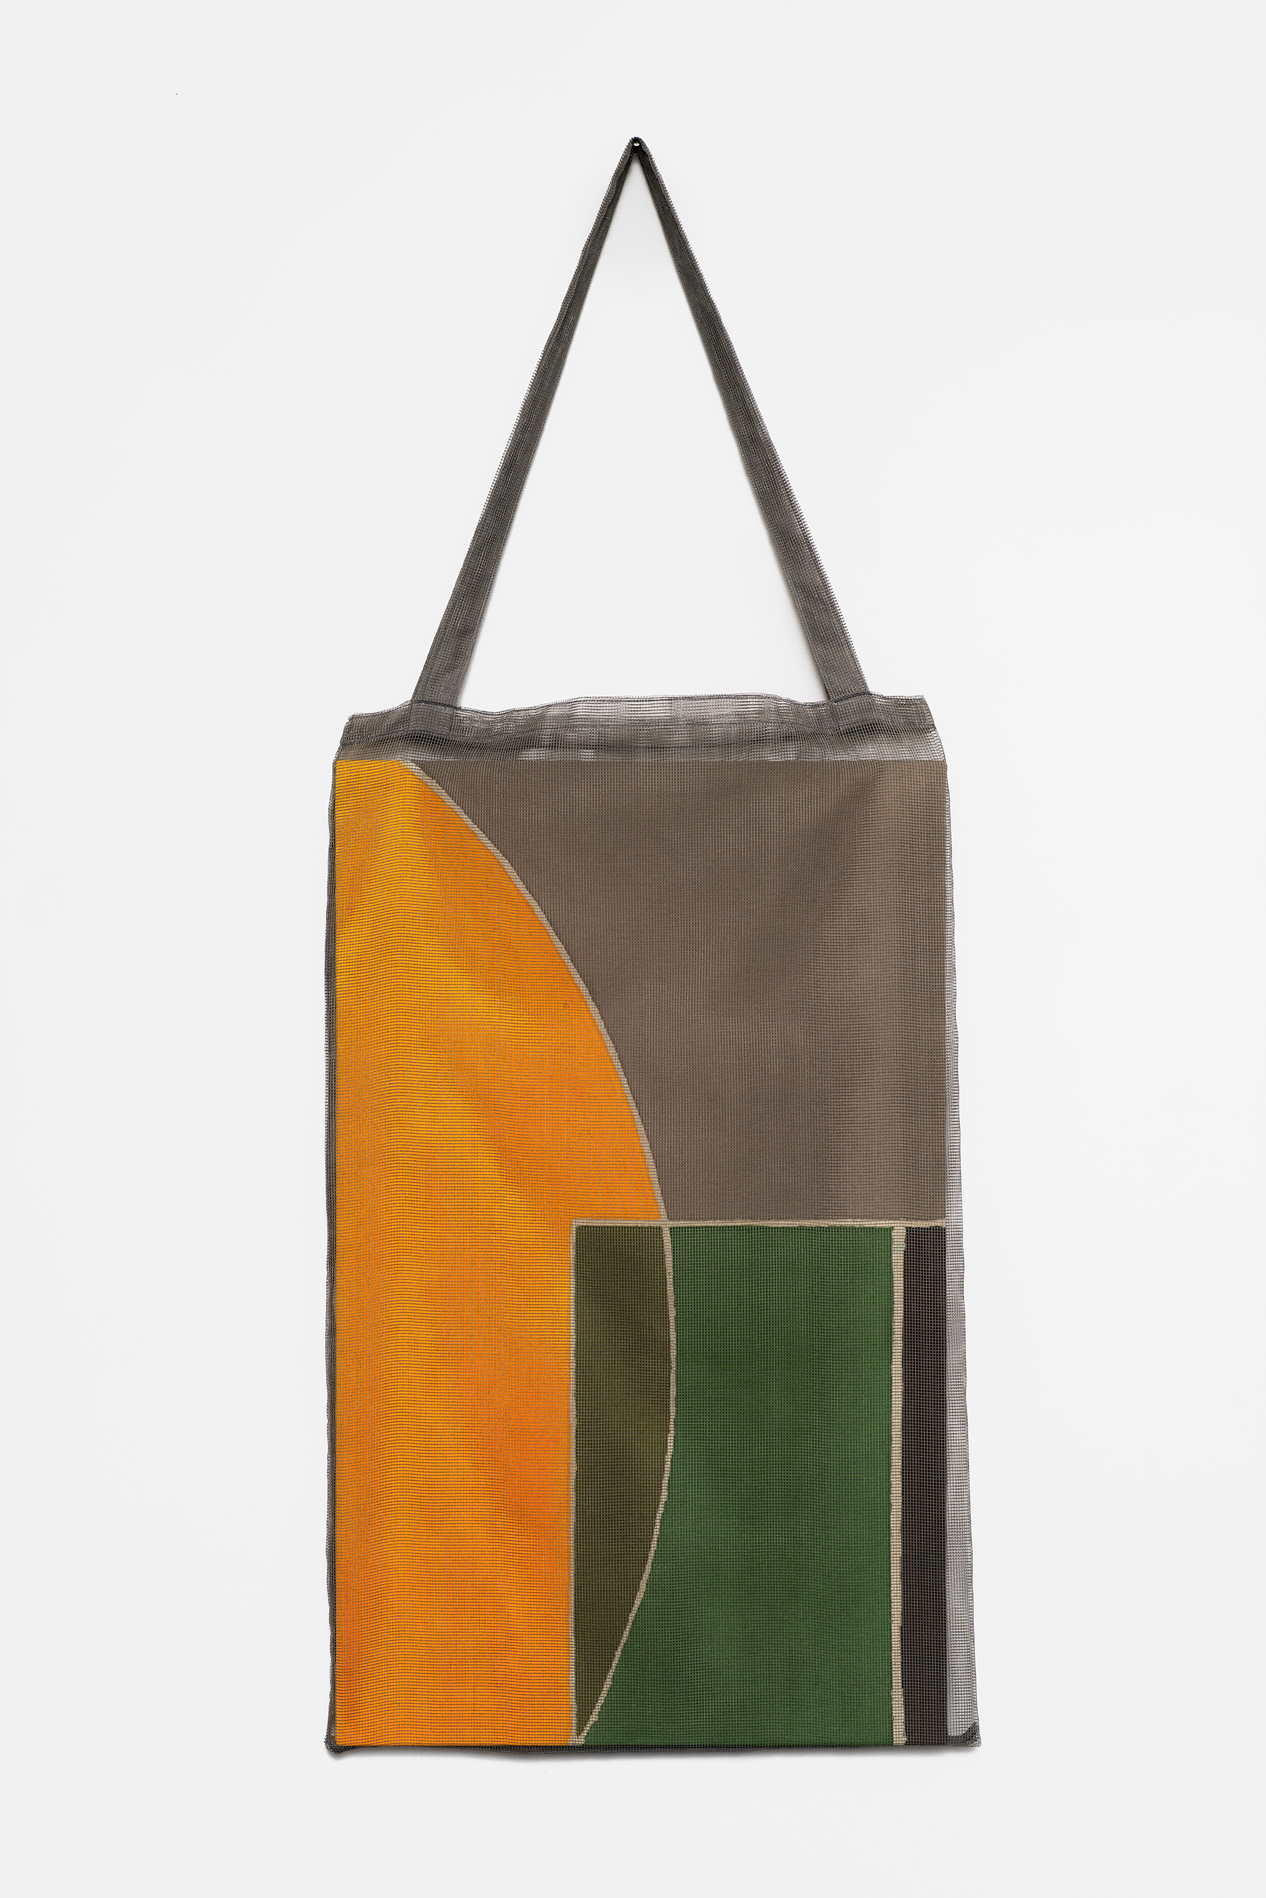 , 2019, pigment on cotton(batik) and bag, 120 x 47 x 3 cm, , Photo: Aurlien Mole